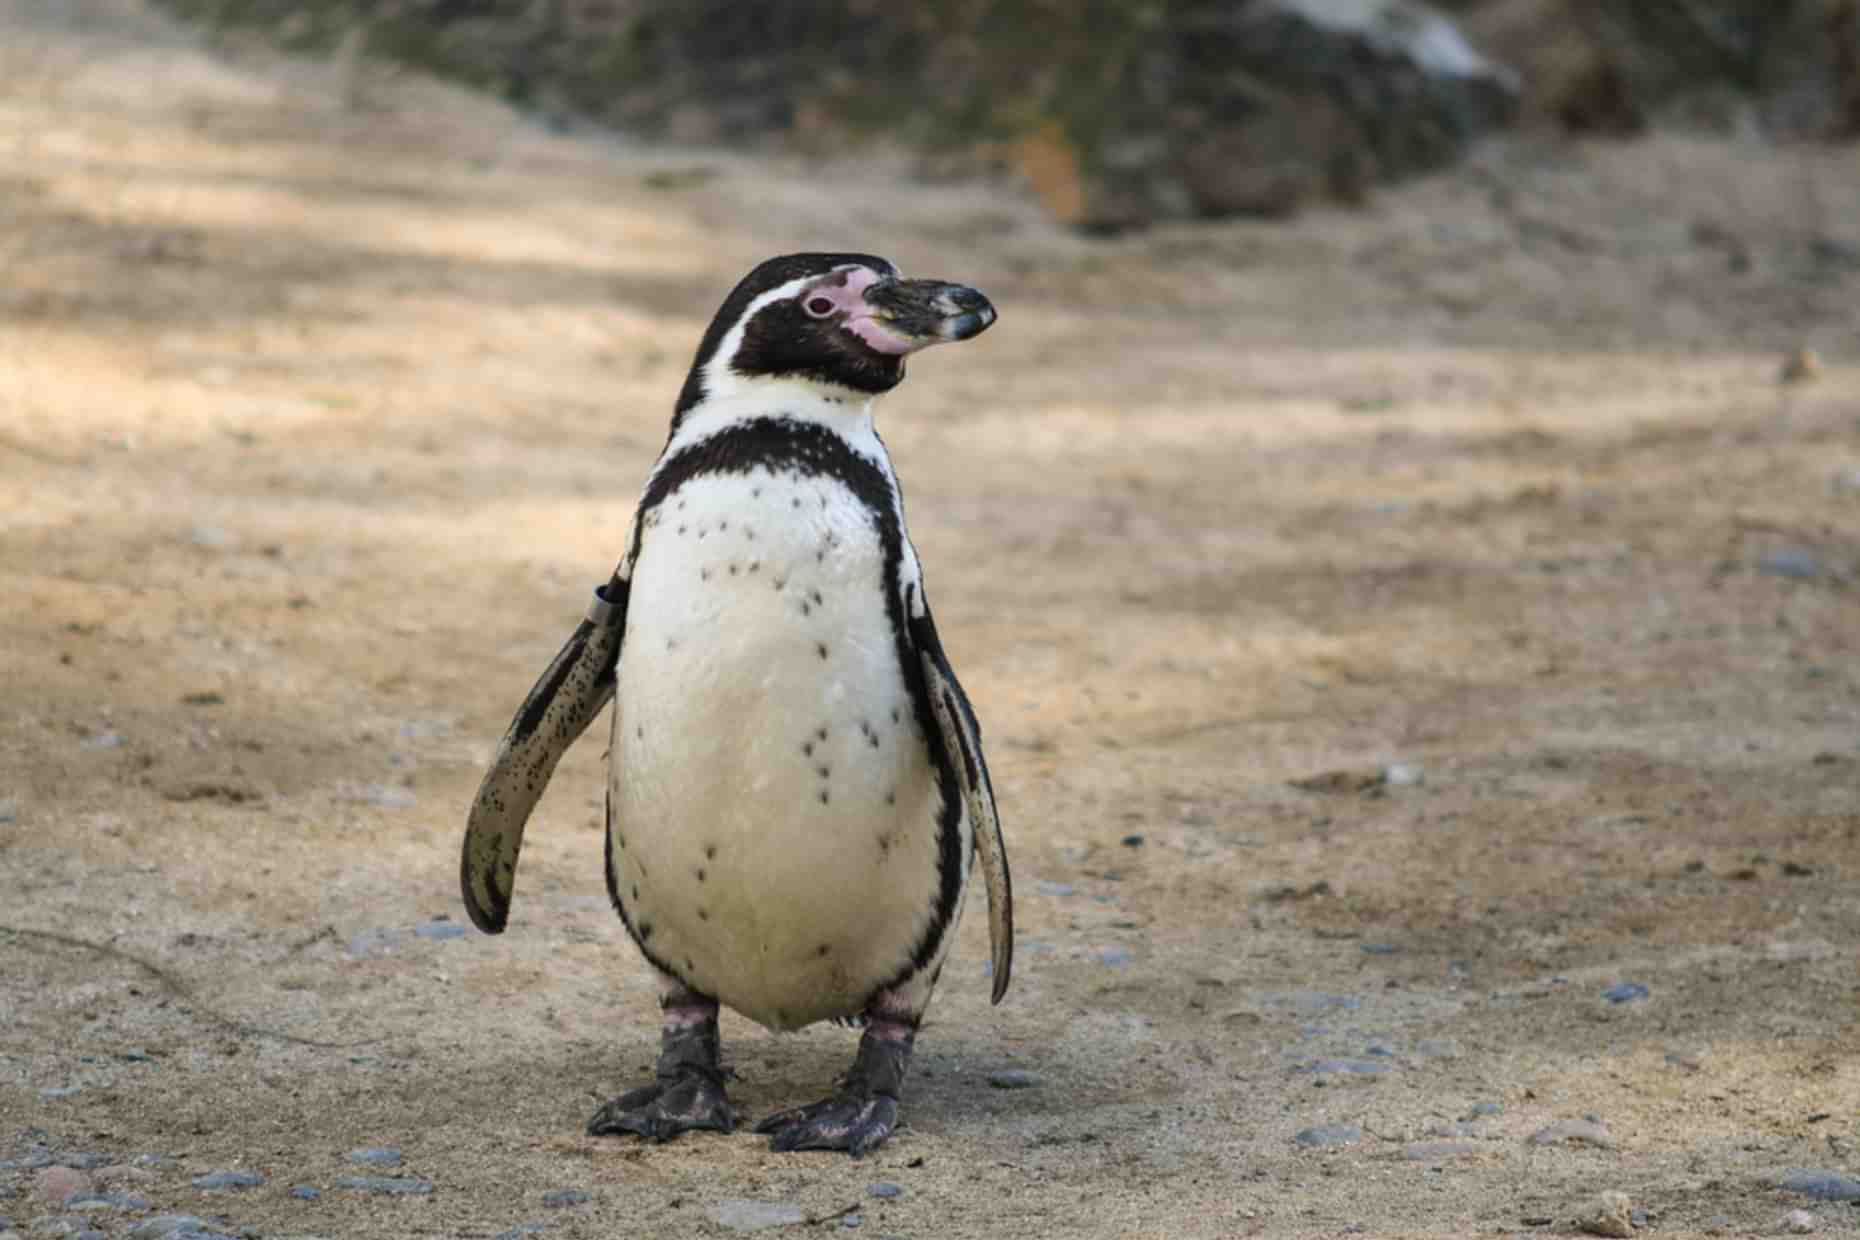 Newquay Zoo Penguin